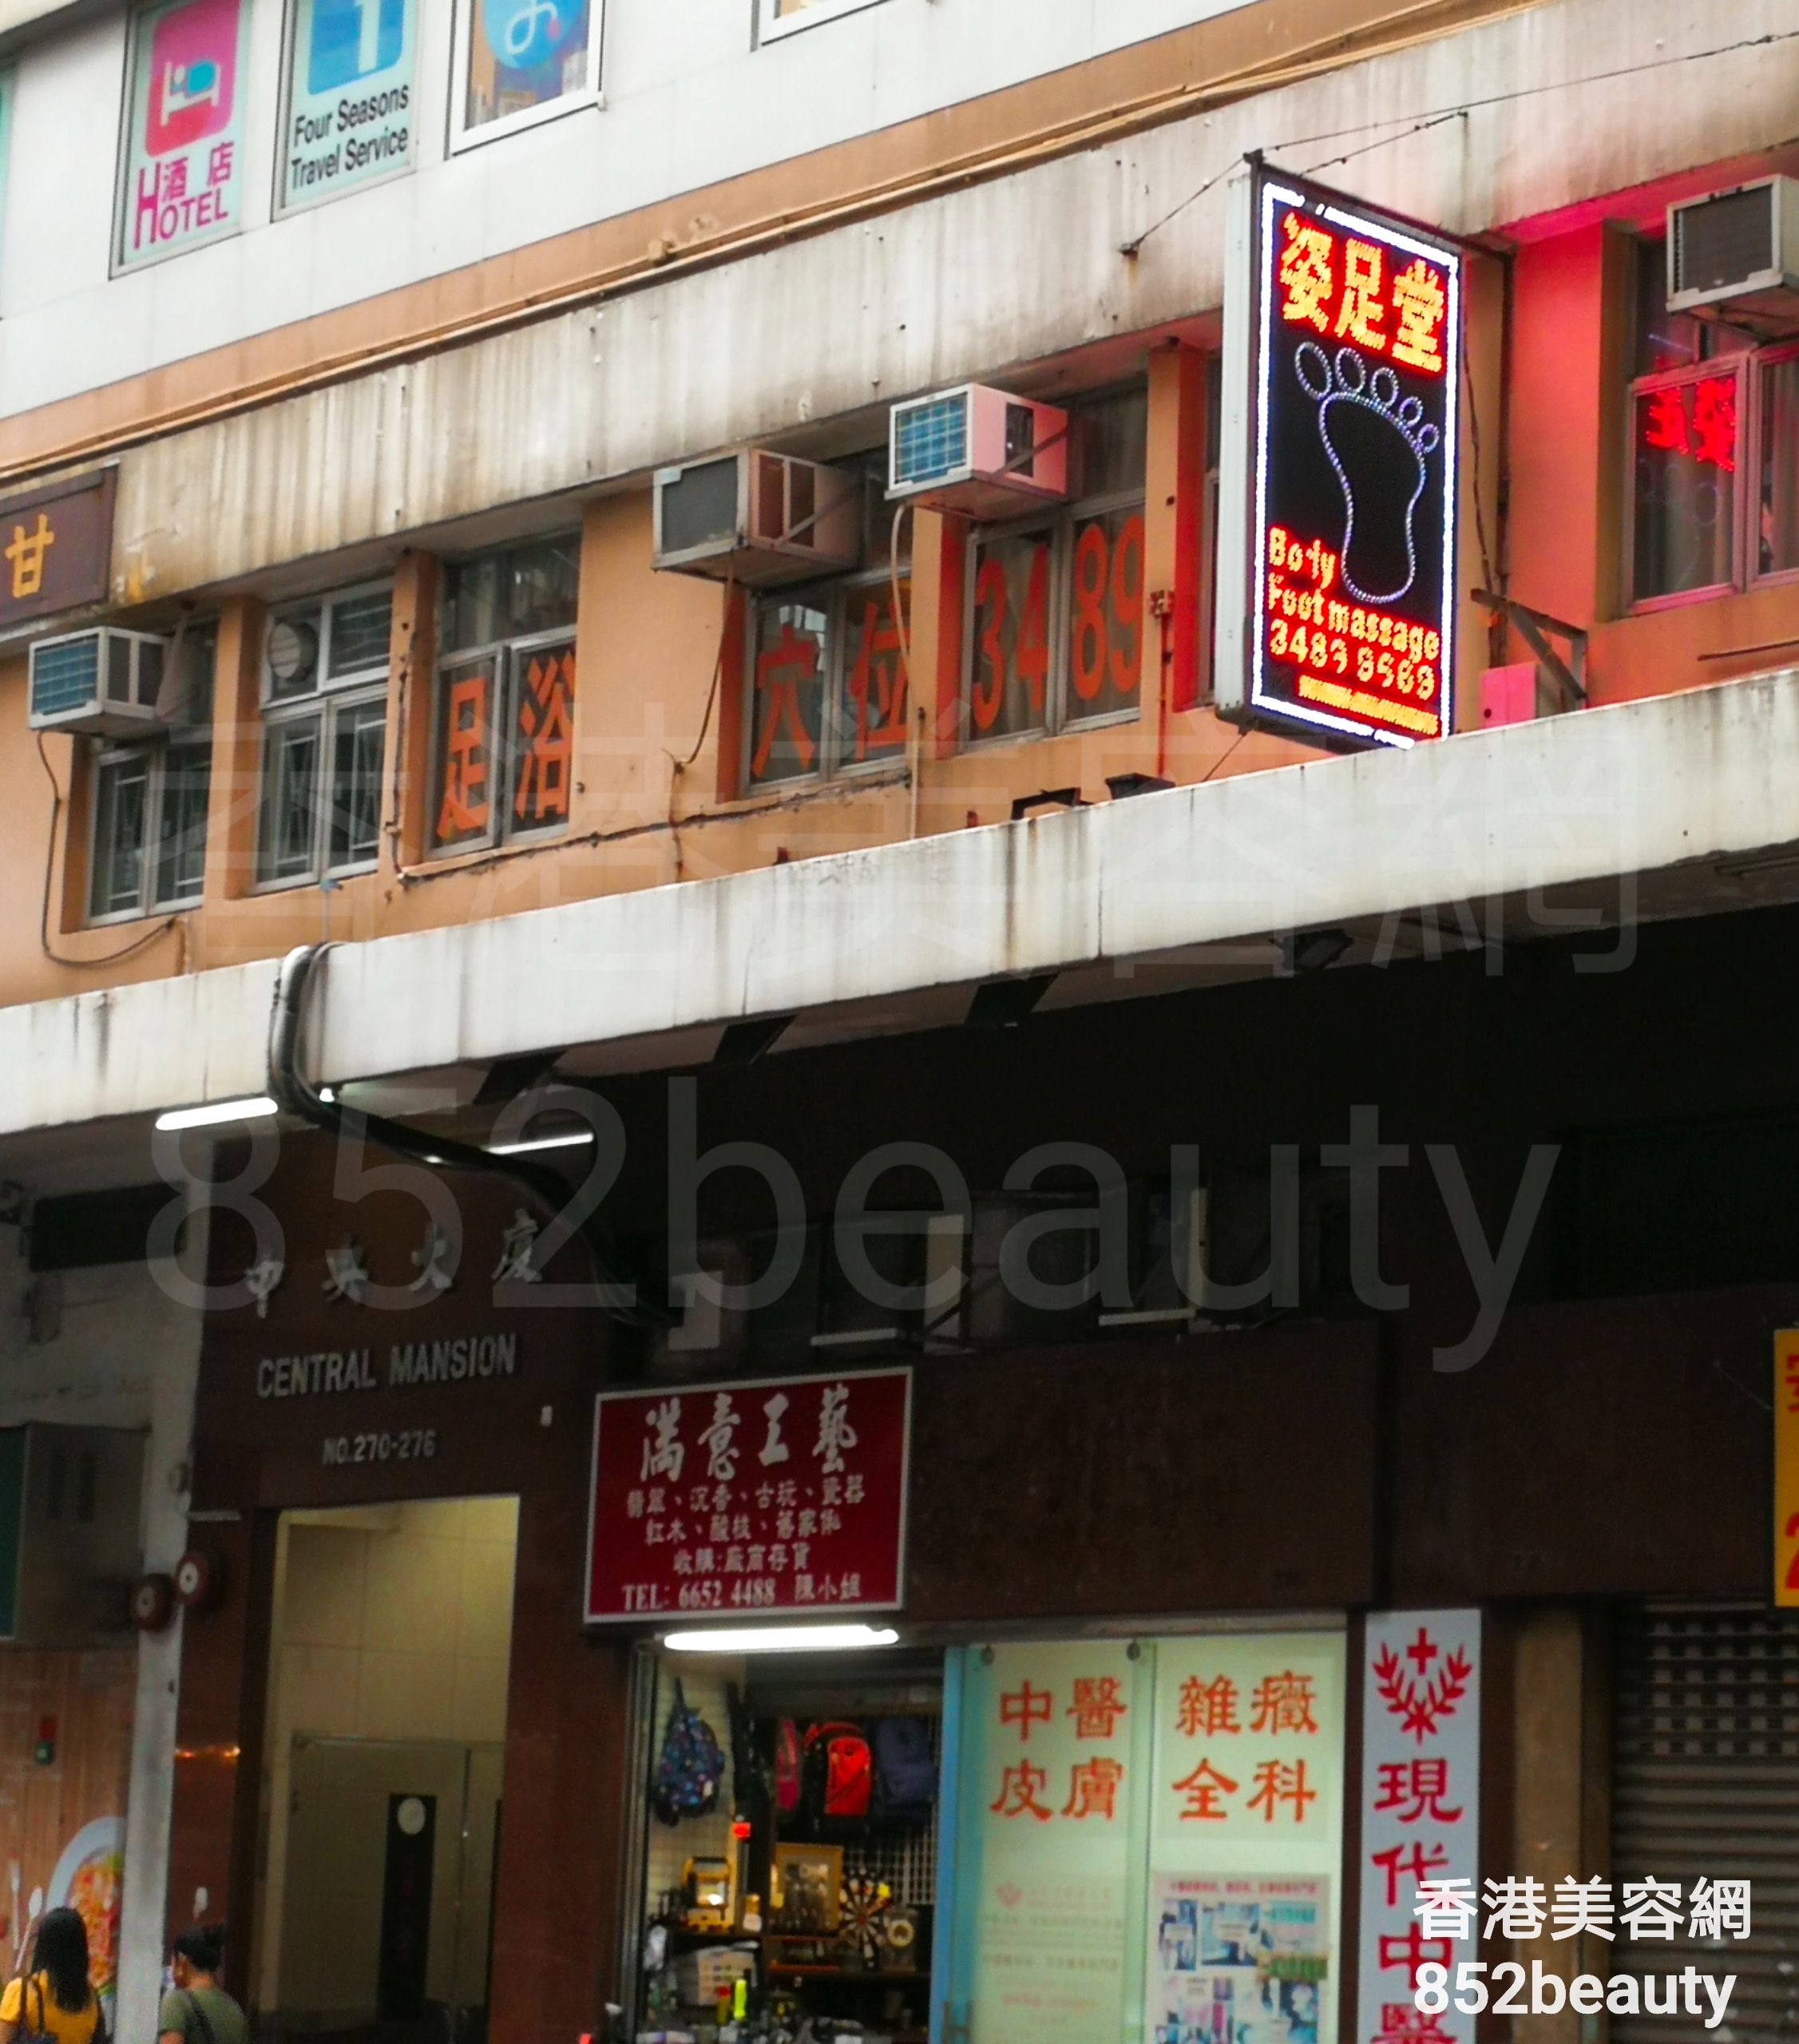 香港美容網 Hong Kong Beauty Salon 美容院 / 美容師: 姿足堂